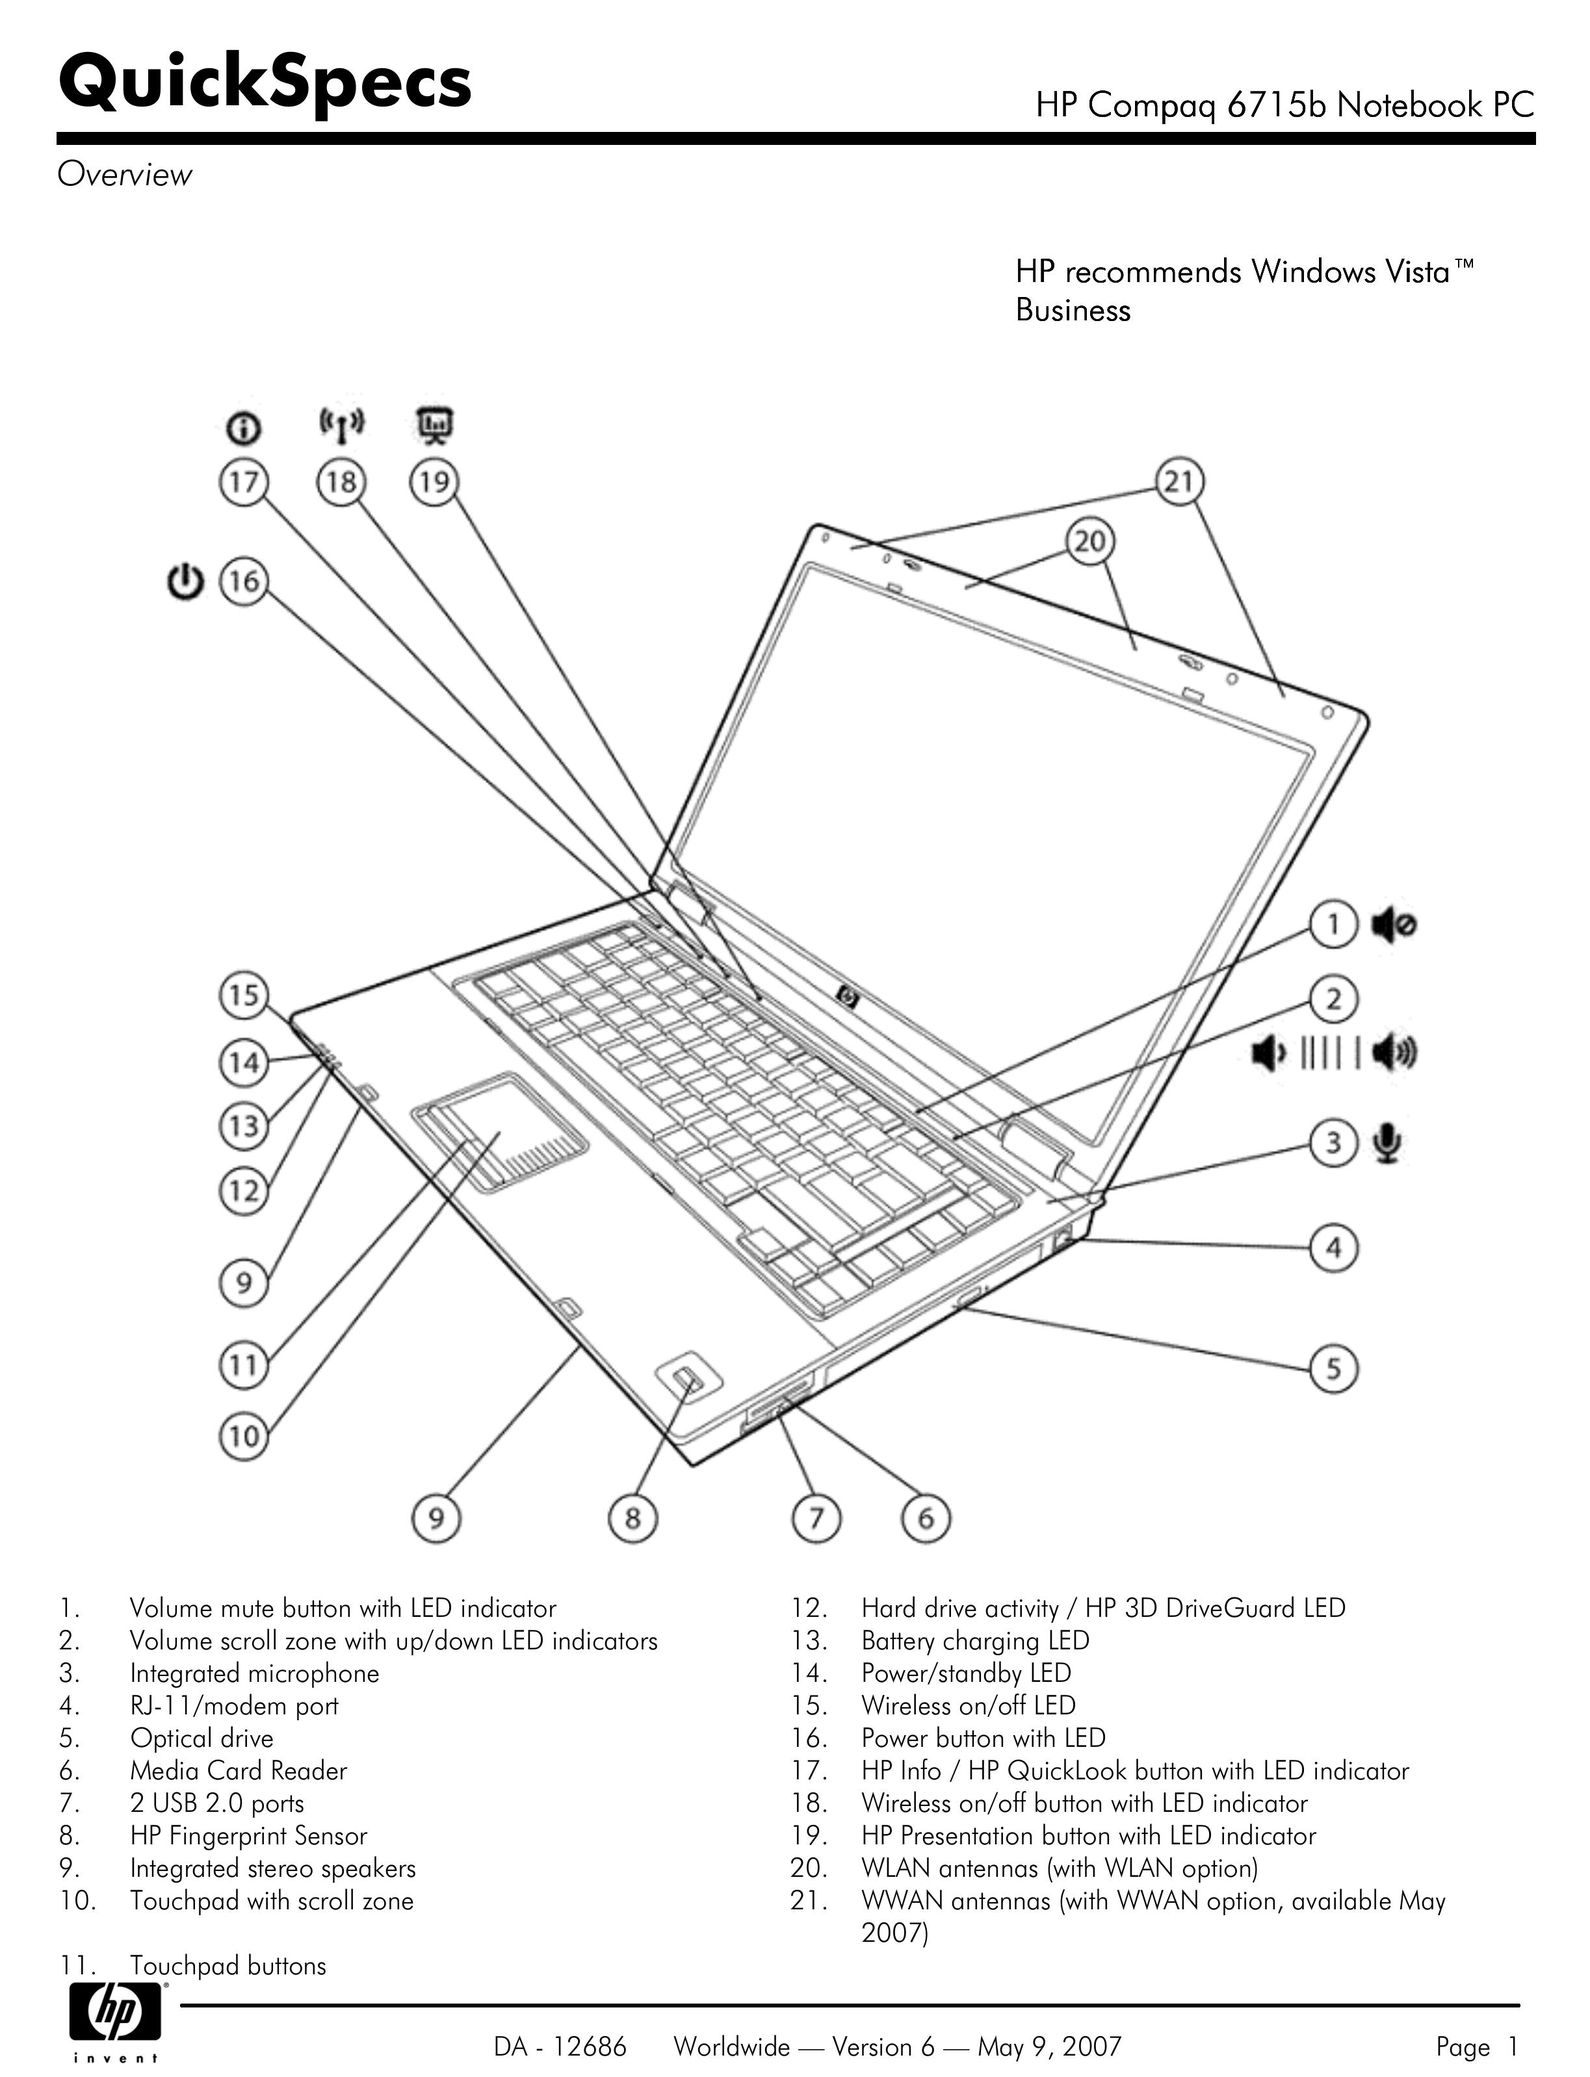 HP (Hewlett-Packard) 6715B Personal Computer User Manual